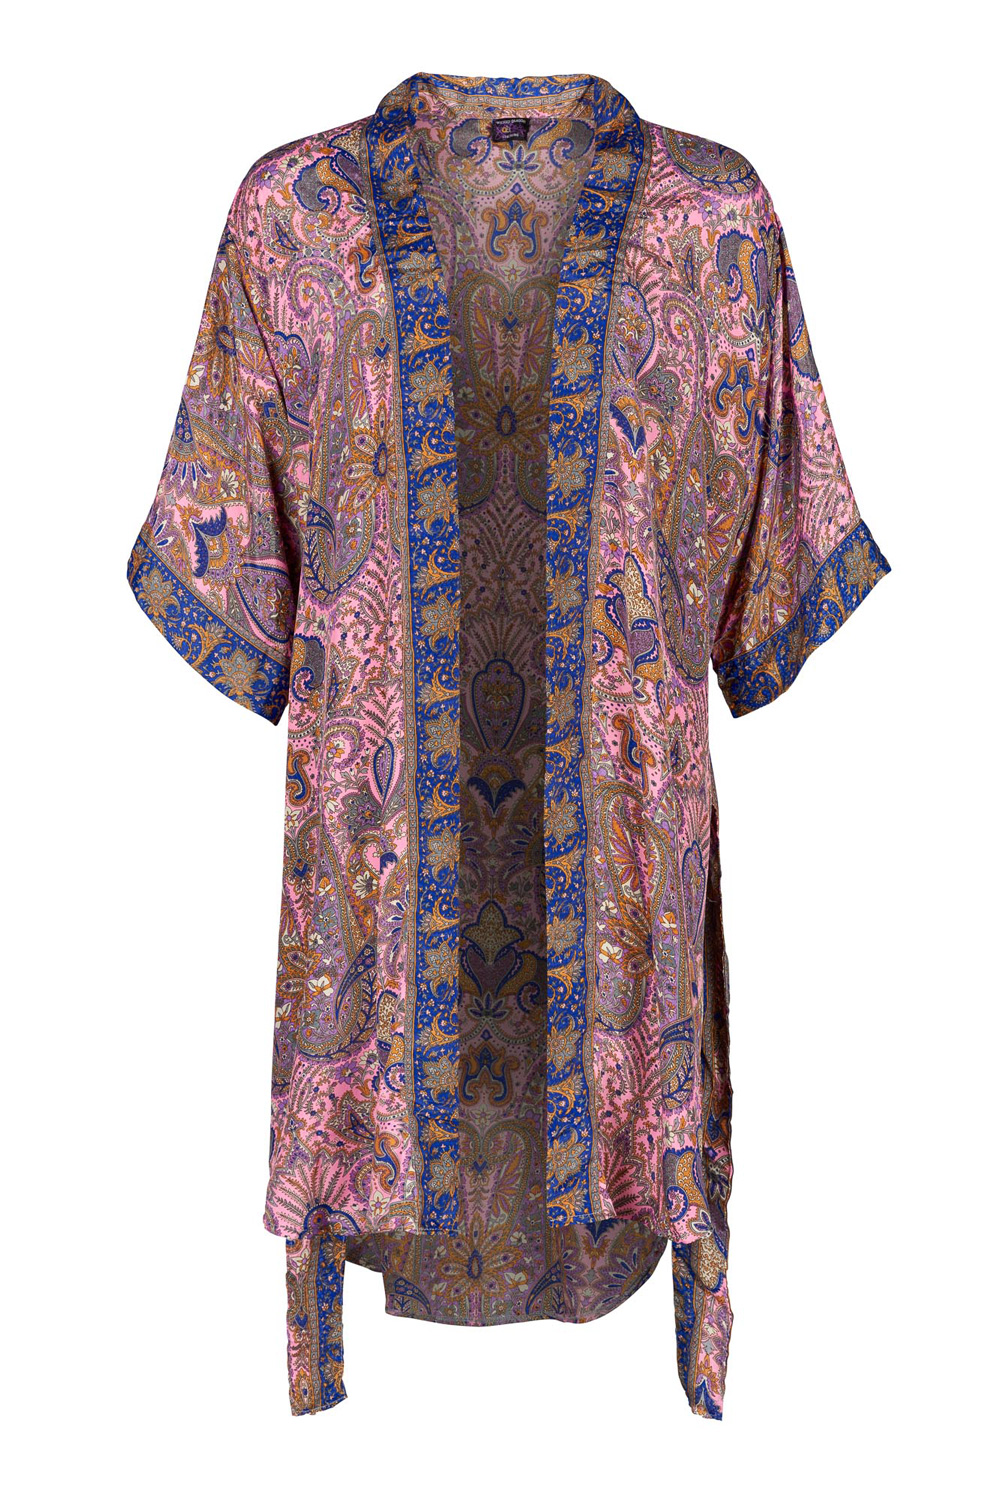 Wicked Dragon Clothing - Bohemian style silky kimono top